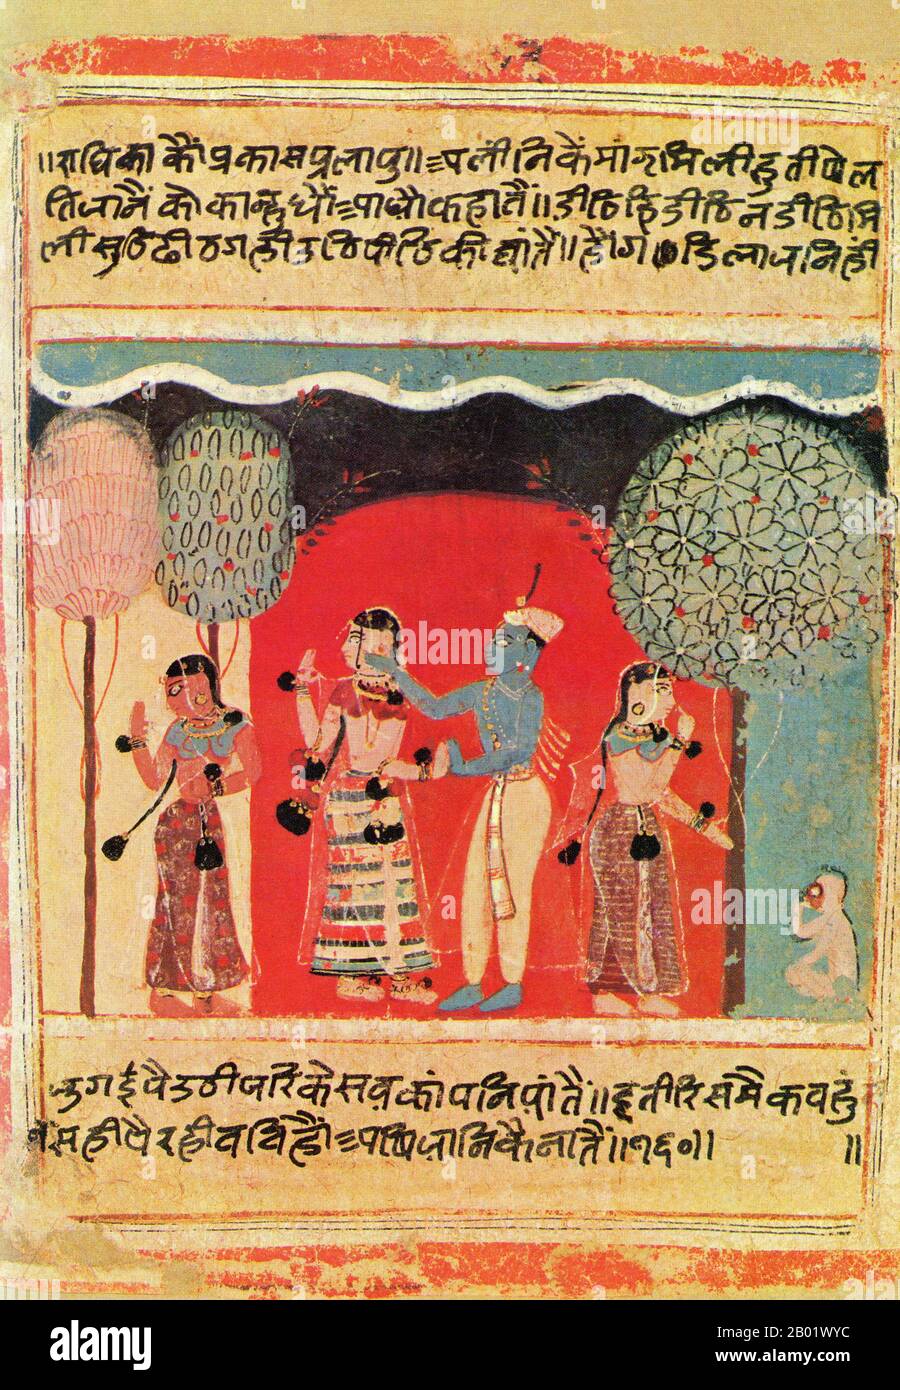 Indien: Krishna und seine geliebte Radha. Miniaturmalerei mit Aquarellen aus der Rasikapriya. Rajput, ca. 1634. Indische Malerei hat eine sehr lange Tradition und Geschichte in der indischen Kunst. Die frühesten indischen Gemälde waren die Felsmalereien aus prähistorischer Zeit, die Petroglyphen, die man an Orten wie Bhimbetka findet, einige davon vor 5500 v. Chr.. Indiens buddhistische Literatur ist reich an Beispielen von Texten, die Paläste von Königen und der aristokratischen Klasse beschreiben, die mit Gemälden geschmückt sind, aber die Gemälde der Ajanta-Höhlen sind die bedeutendsten der wenigen Überreste. Stockfoto